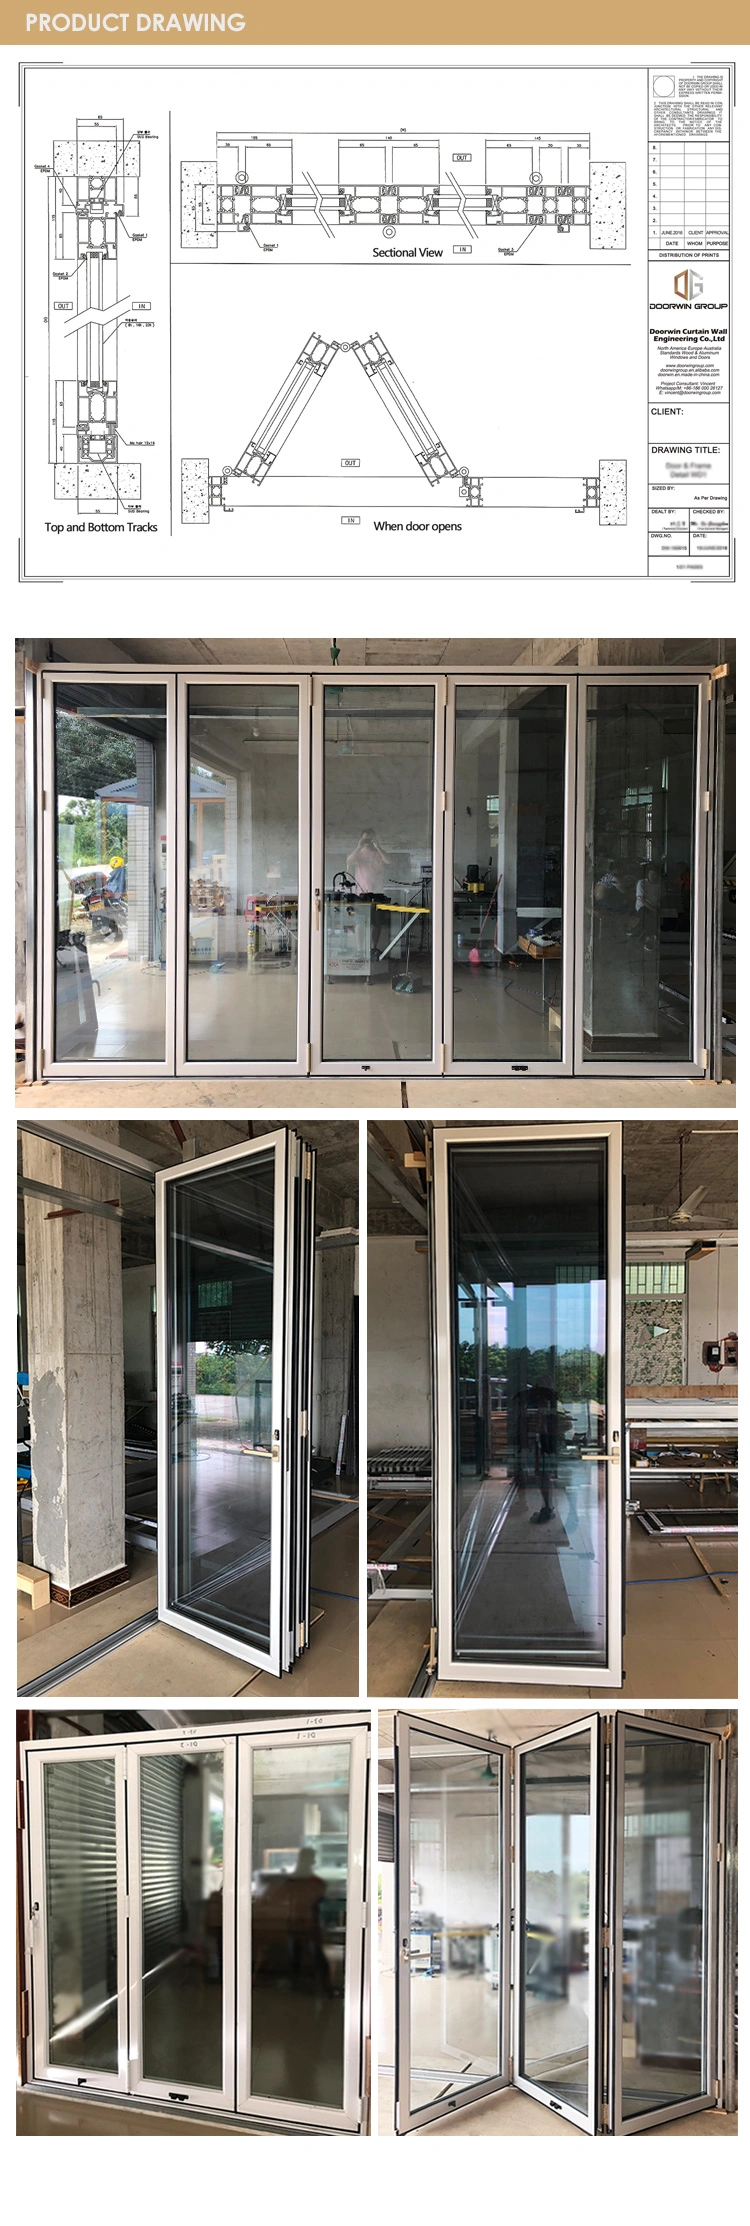 Australian Standard New Bifold Windows and Doors Double Glass Modern Designs Aluminum Folding Doors Exterior